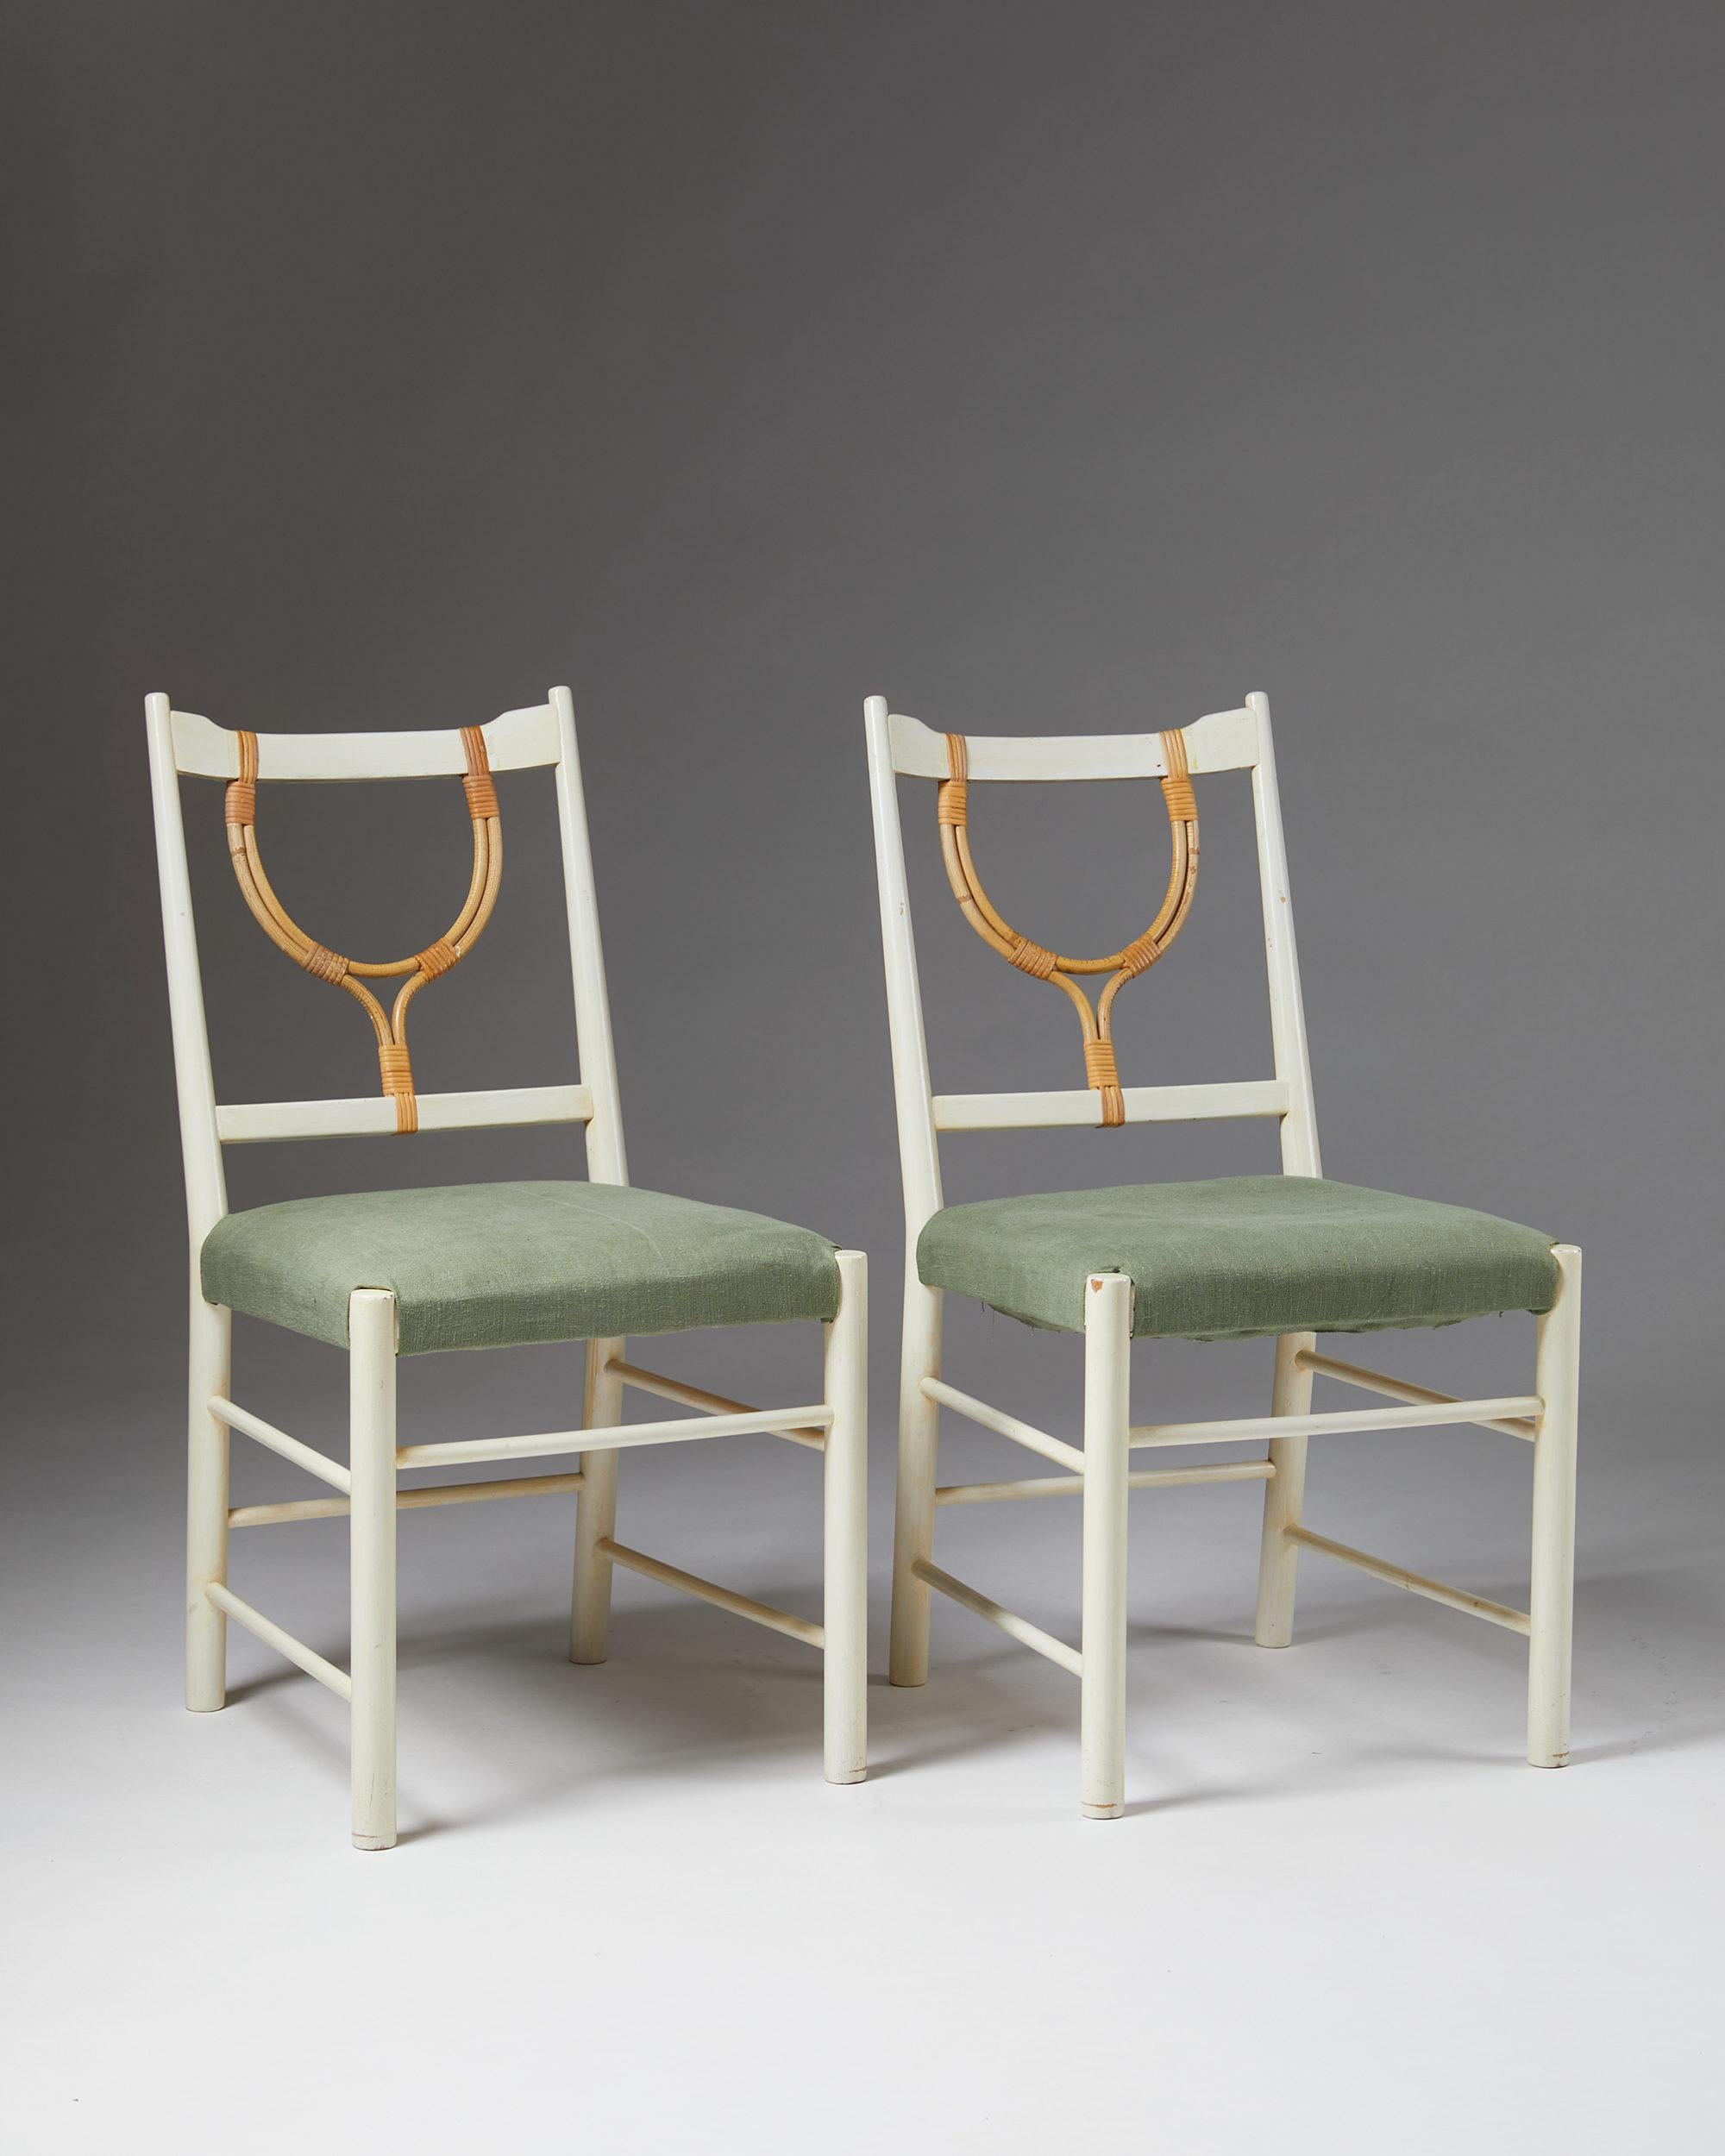 Scandinavian Modern Pair of Chairs Model 2238 Designed by Josef Frank for Svenskt Tenn, Sweden, 1940